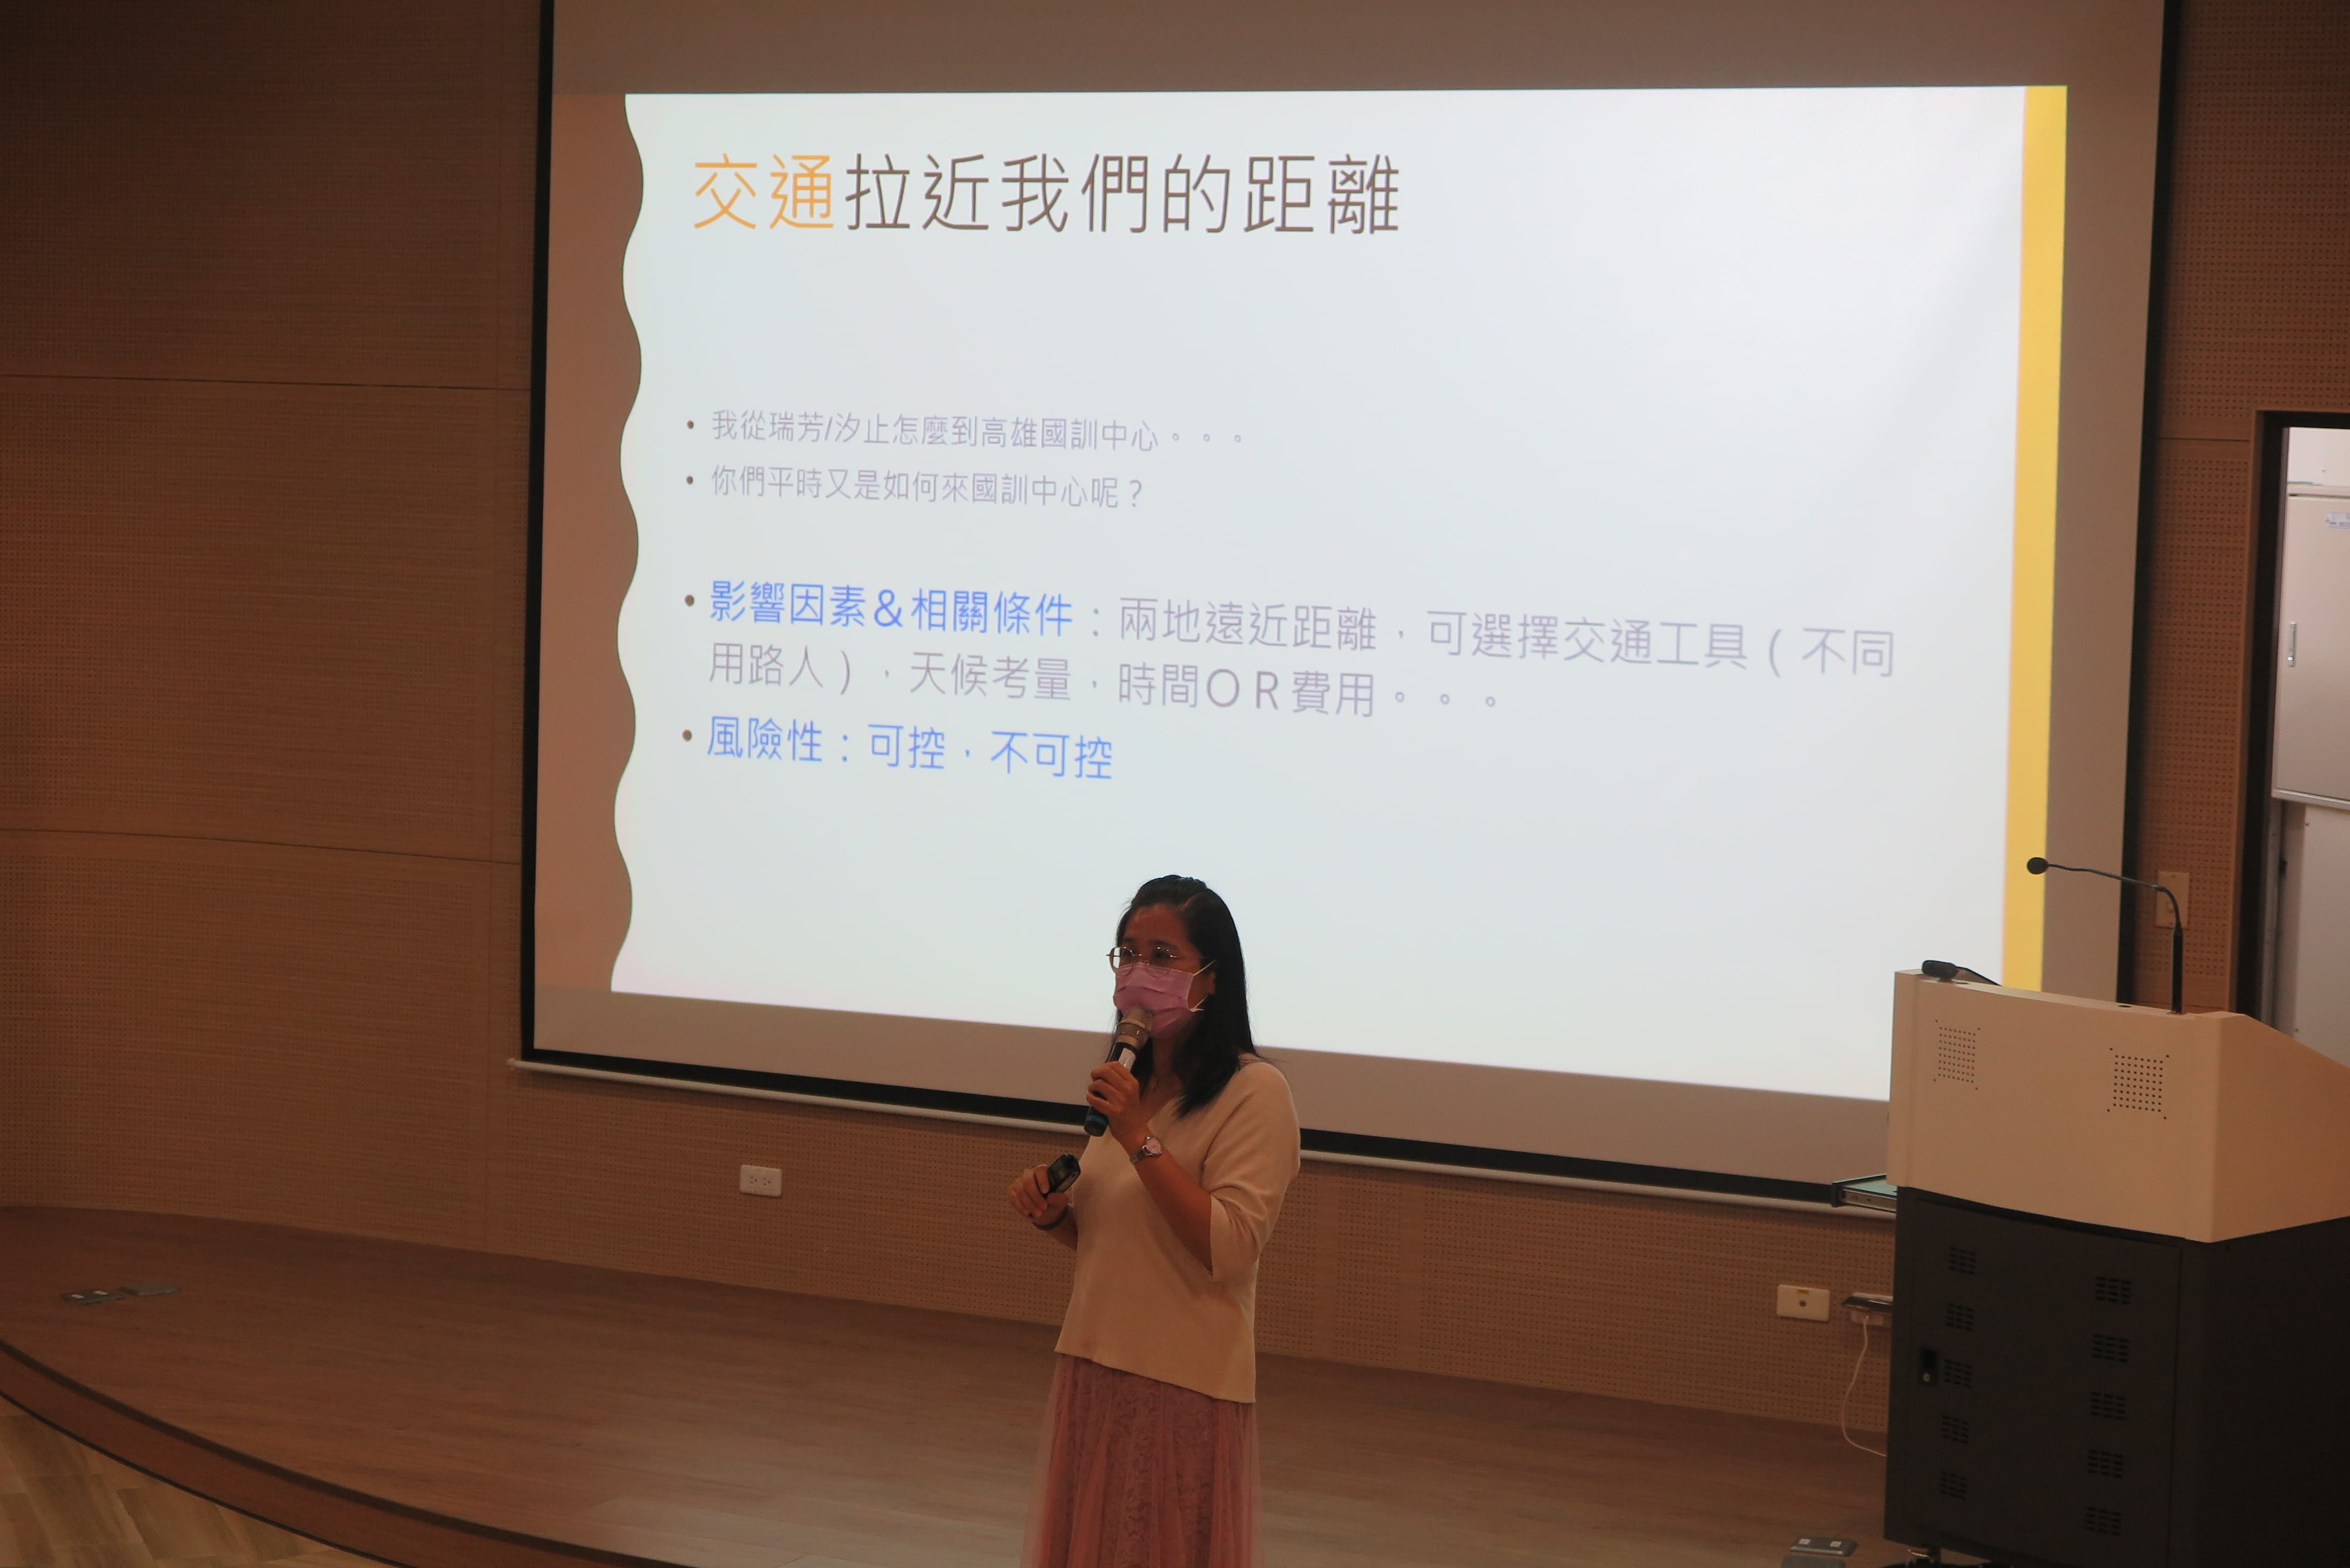 國訓中心邀請瑞芳高工楊惠娥老師辦理交通安全講座。